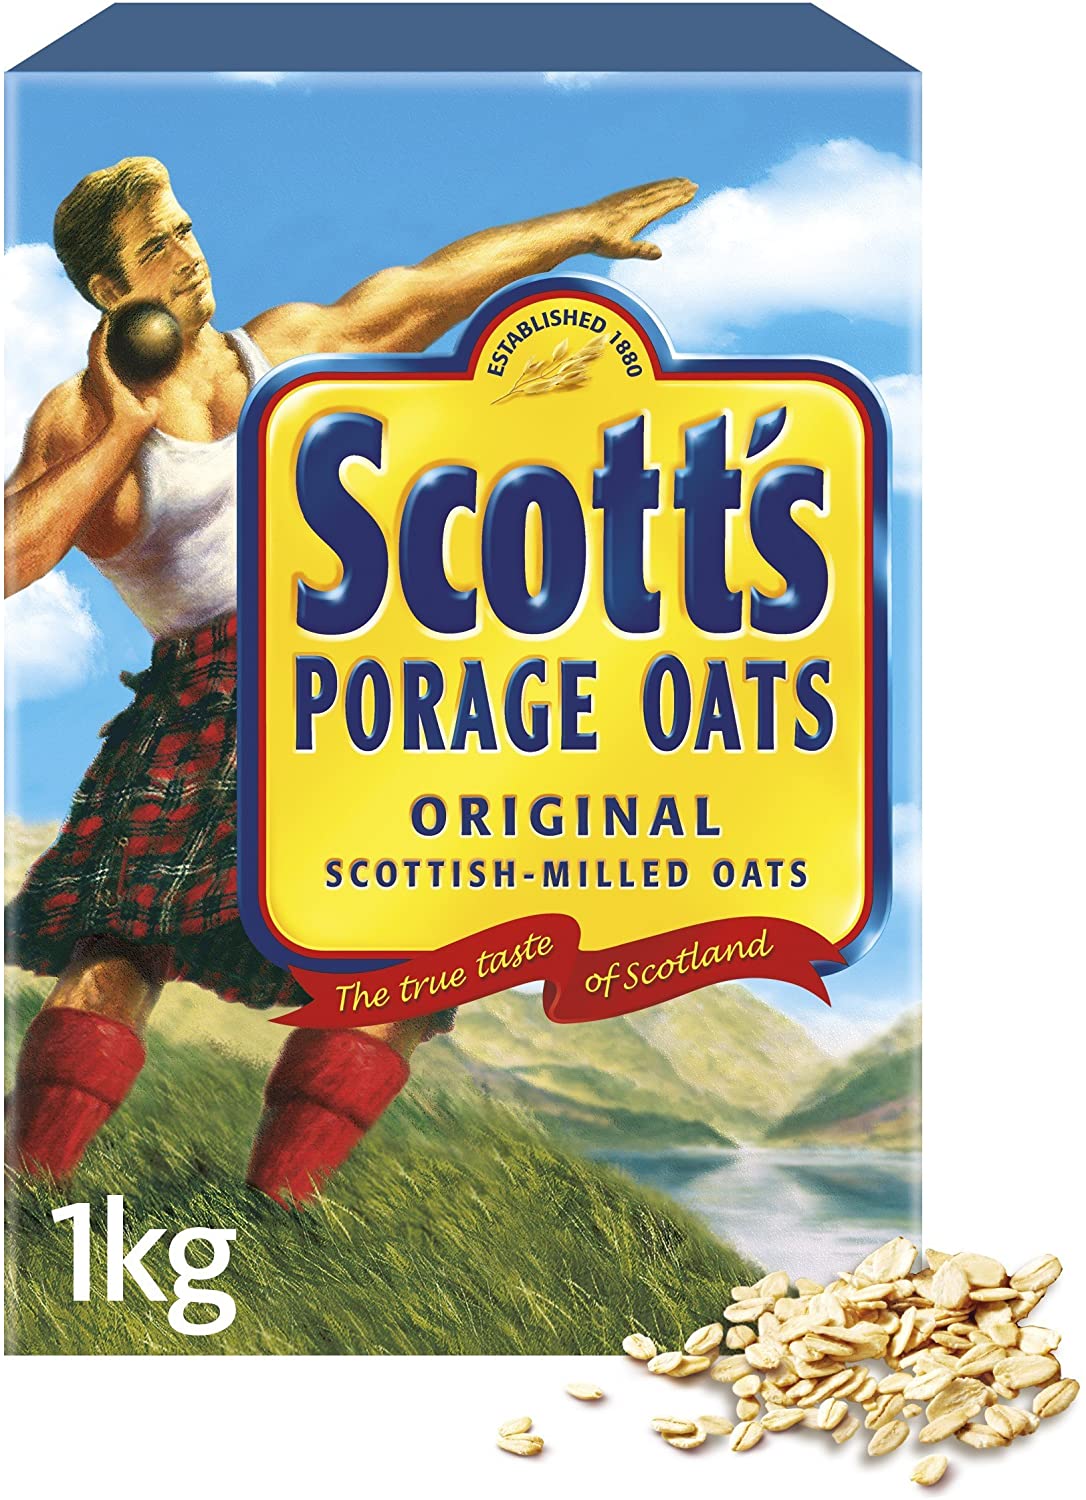 Scott's Original Porridge Oats 1kg